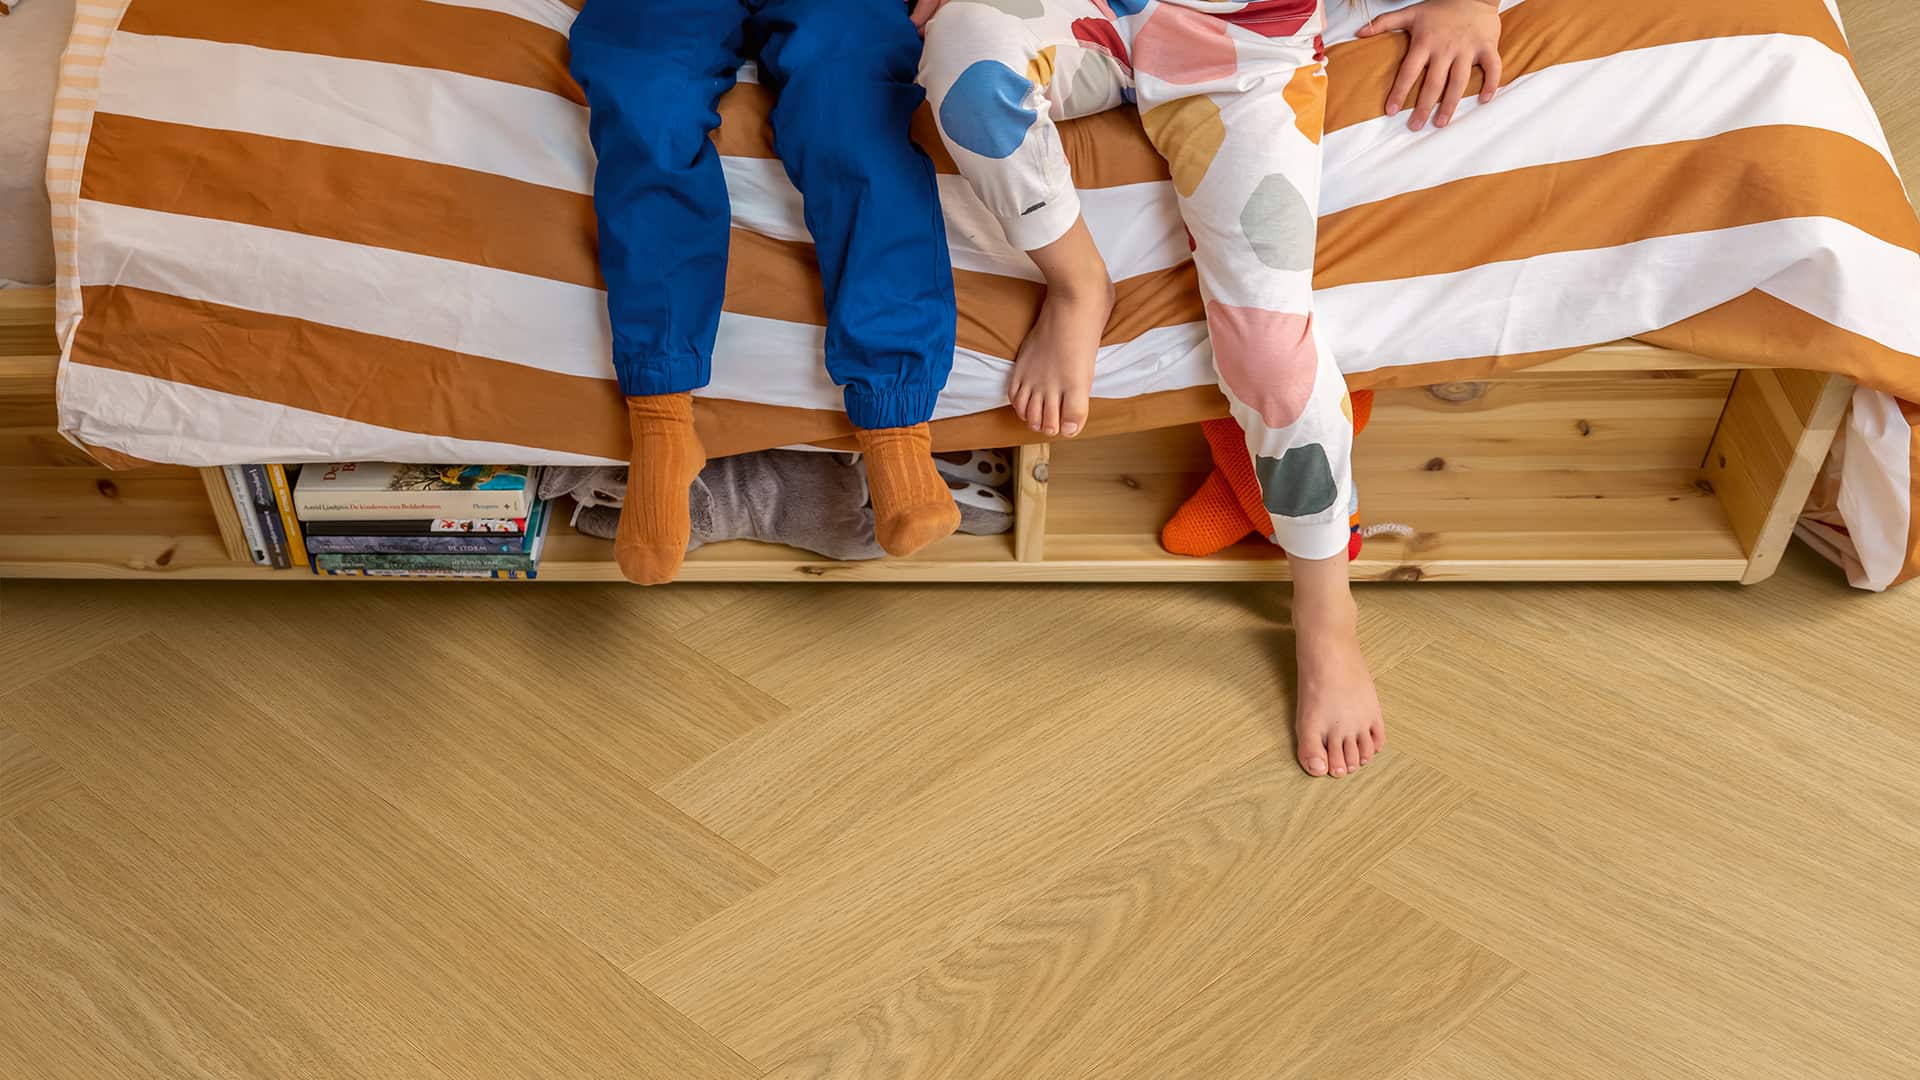 Dětský pokoj s hnědou vinylovou podlahou ve tvaru rybí kosti